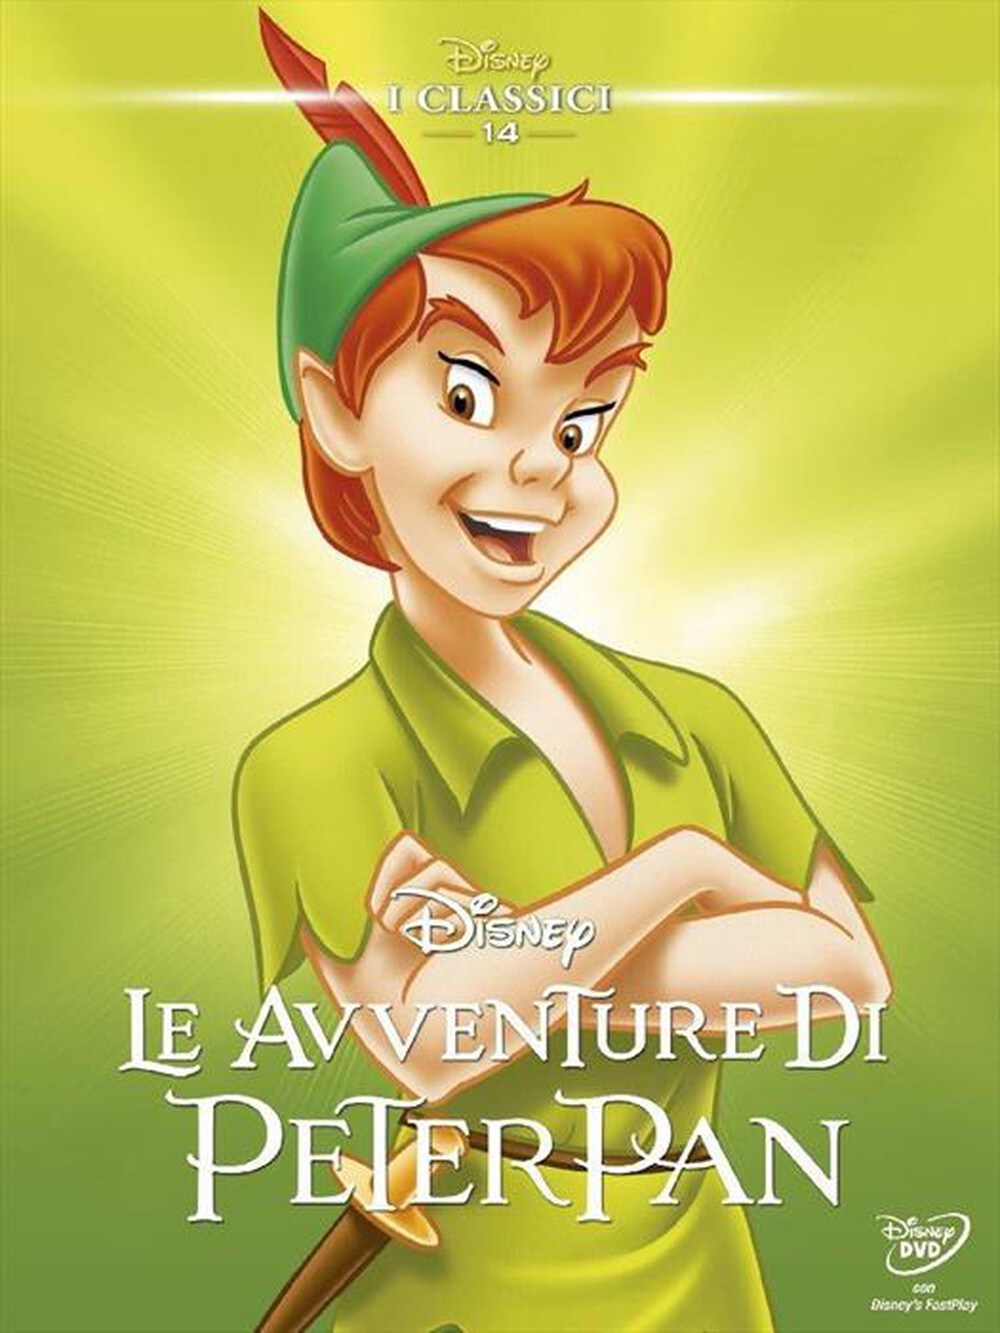 "WALT DISNEY - Avventure Di Peter Pan (Le) - "